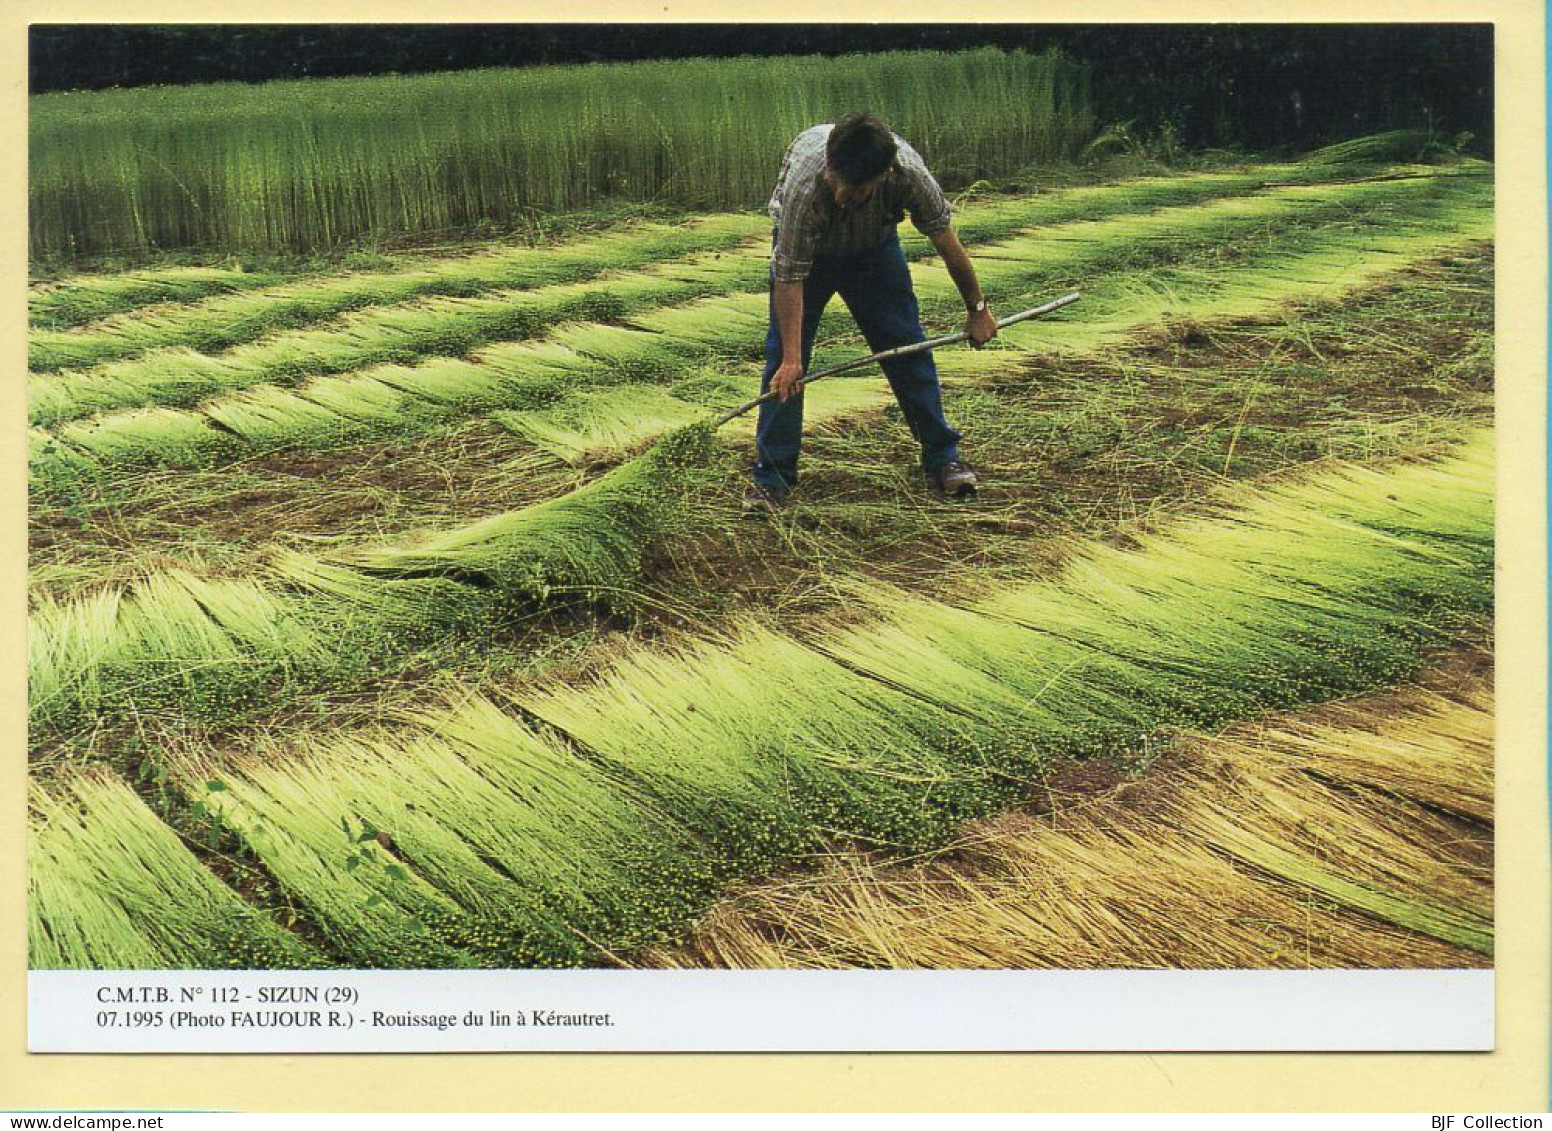 Rouissage Du Lin à Kérautret / SIZUN (29) (FAUJOUR R.) C.M.T.B. N° 112 / 400 Exemplaires (CARTOUEST) - Landbouwers